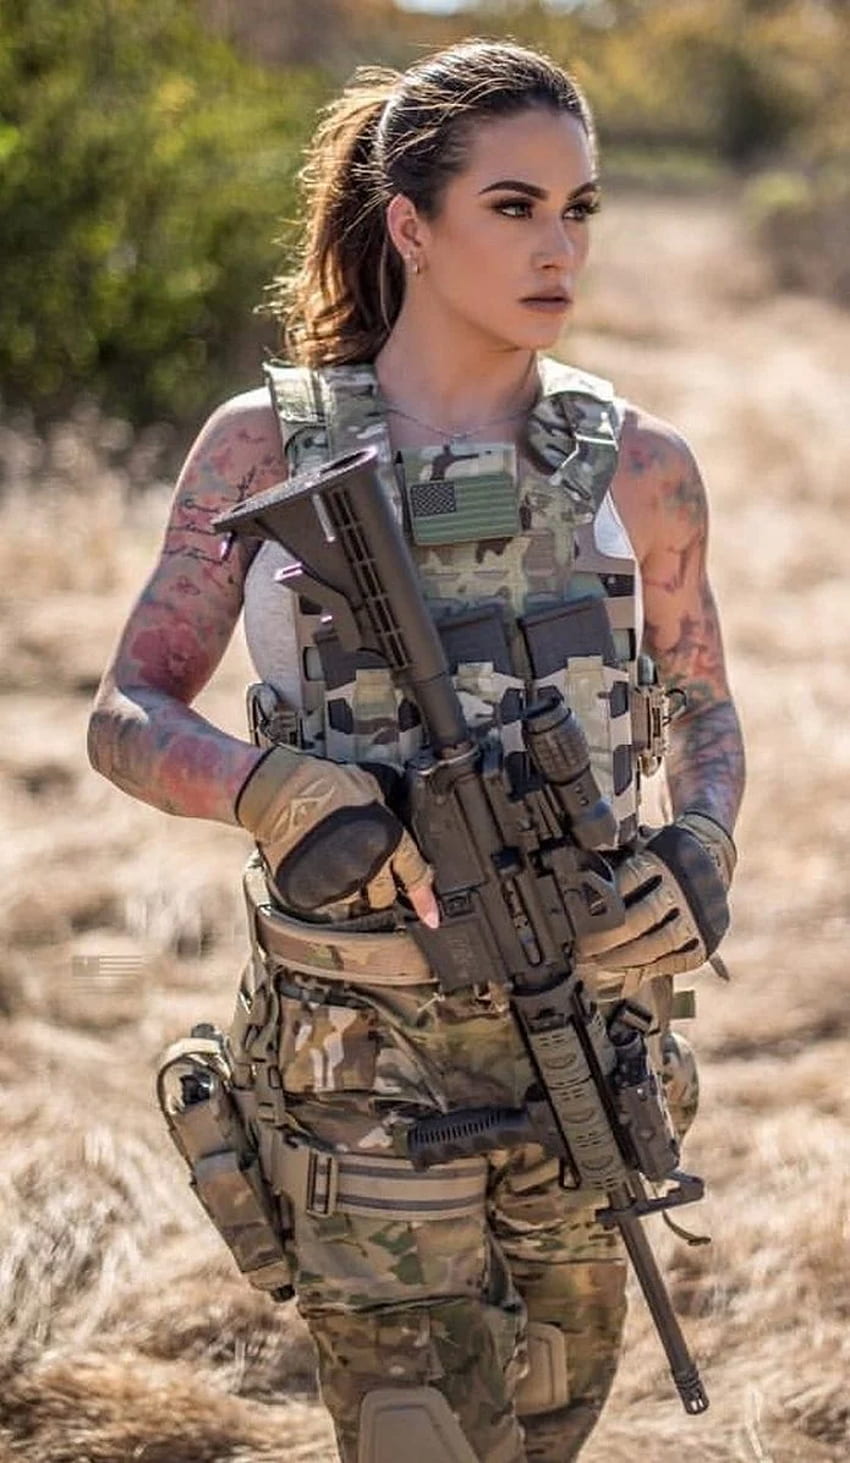 Hot Military Babes - Gadis & Senjata - Gadis Dengan Senjata wallpaper ponsel HD